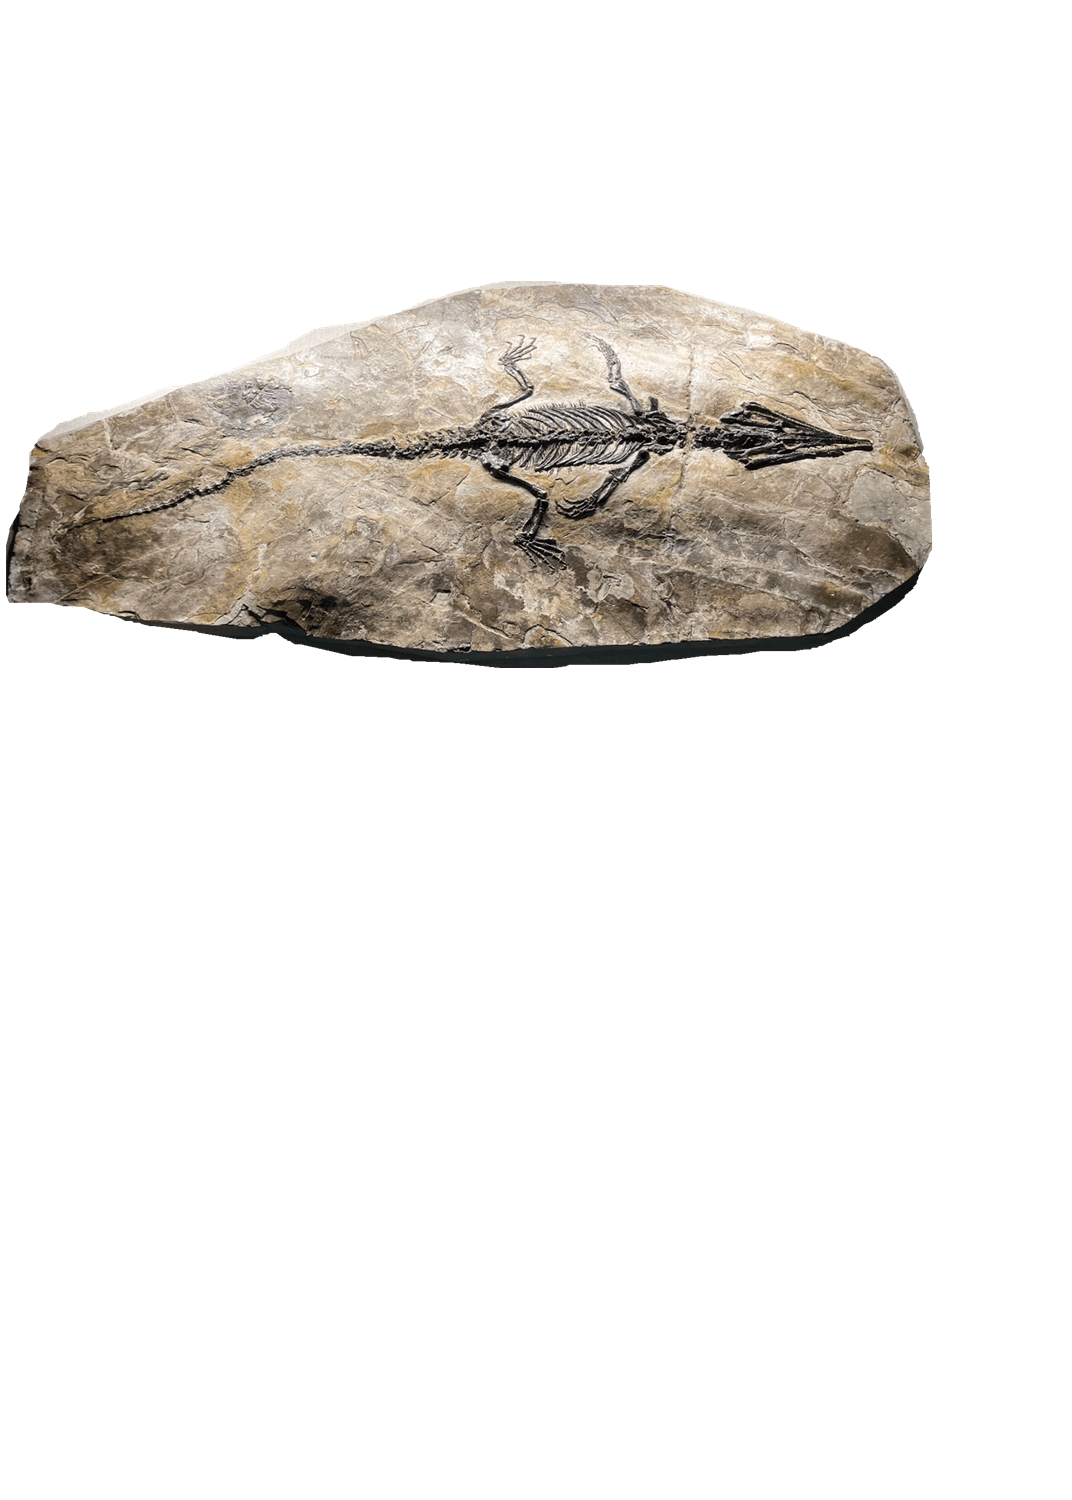 潜龙化石图片及价格图片